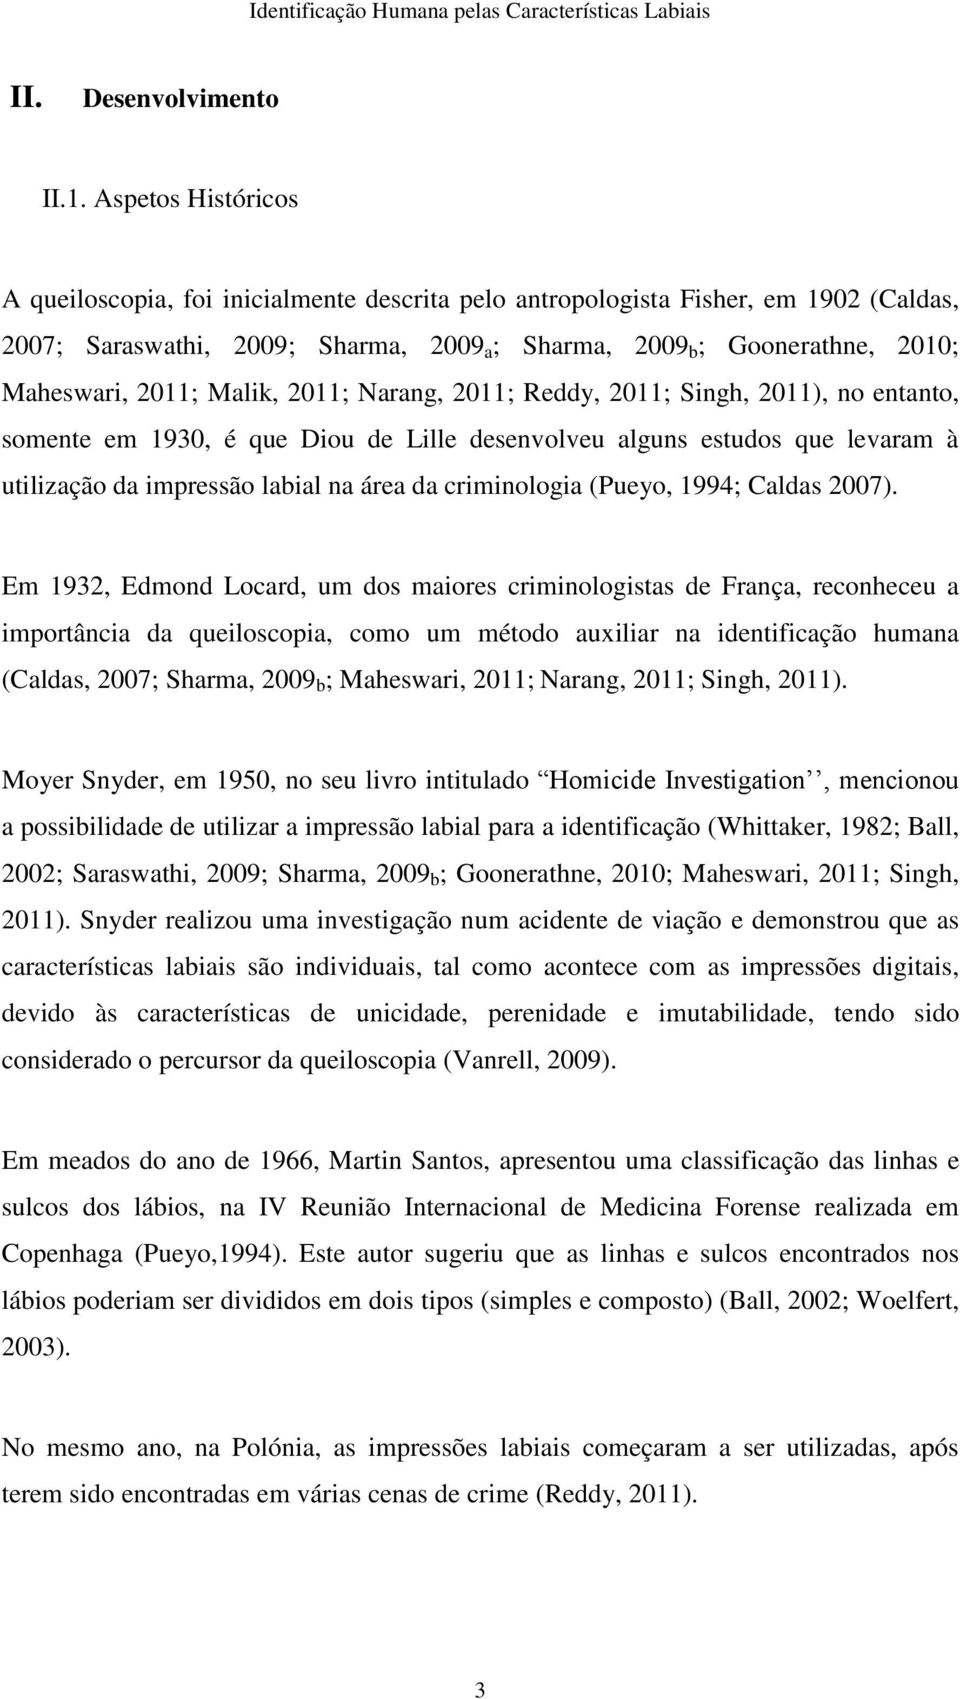 Malik, 2011; Narang, 2011; Reddy, 2011; Singh, 2011), no entanto, somente em 1930, é que Diou de Lille desenvolveu alguns estudos que levaram à utilização da impressão labial na área da criminologia